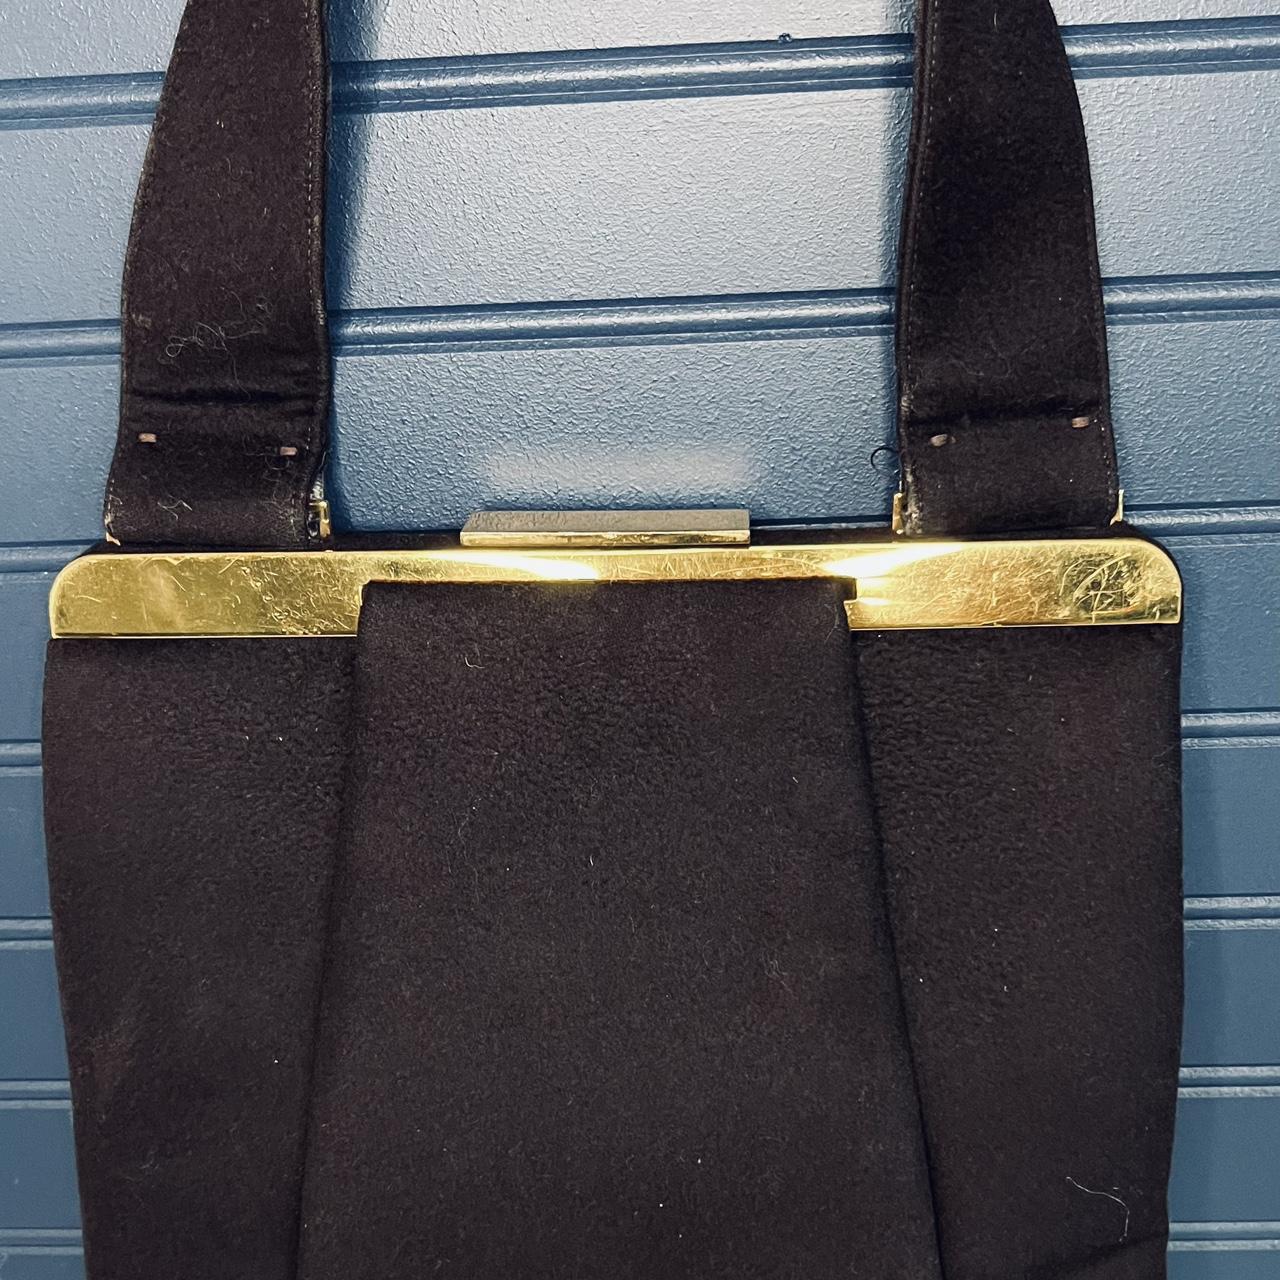 1940s Crown LEWIS Handbag LEWIS Black Wool 40s Handbag 